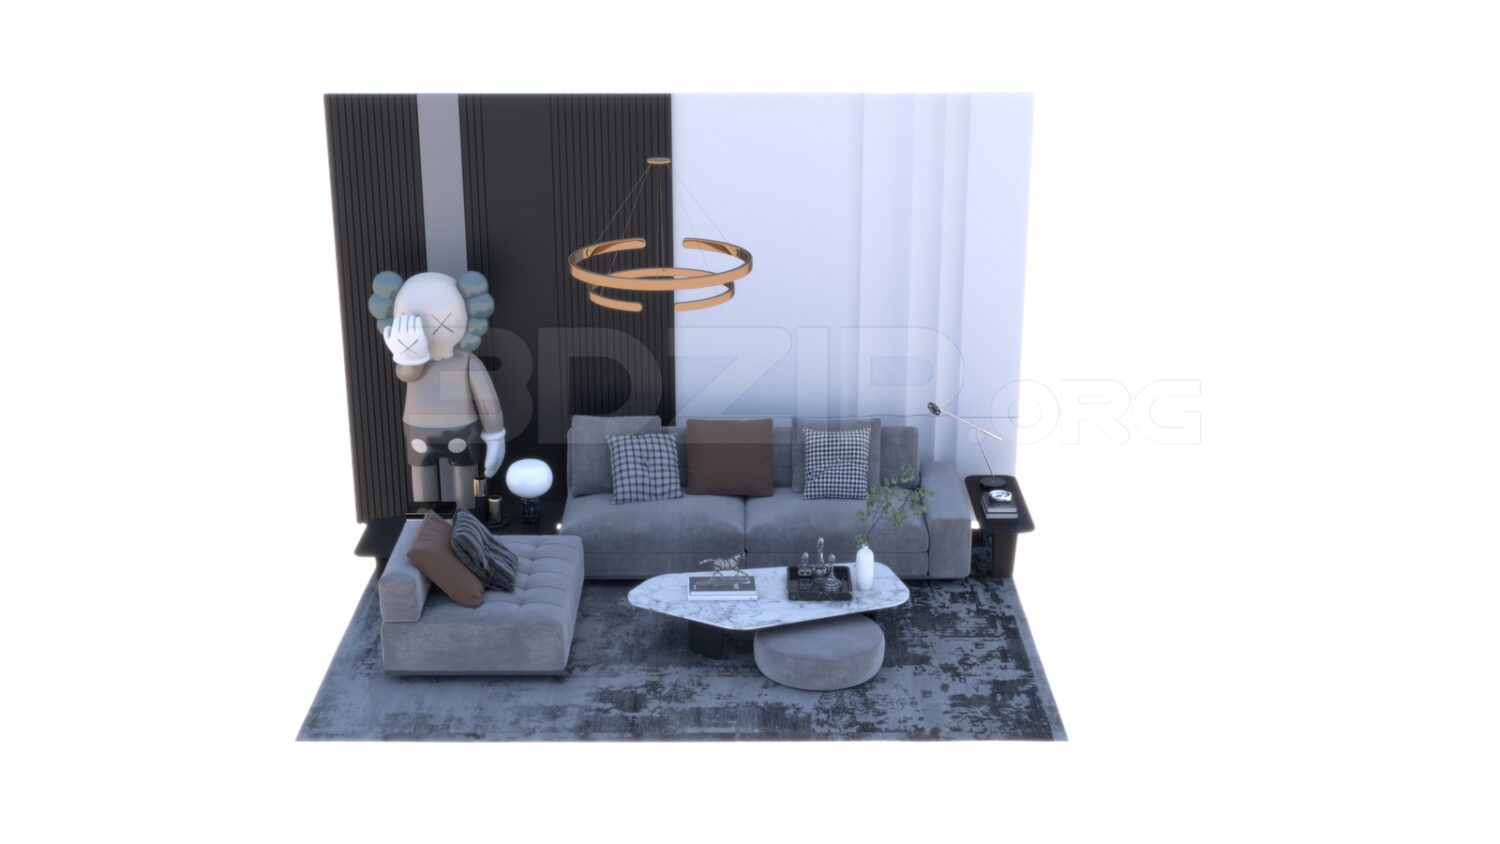 3458. Free 3D Sofa Model Download